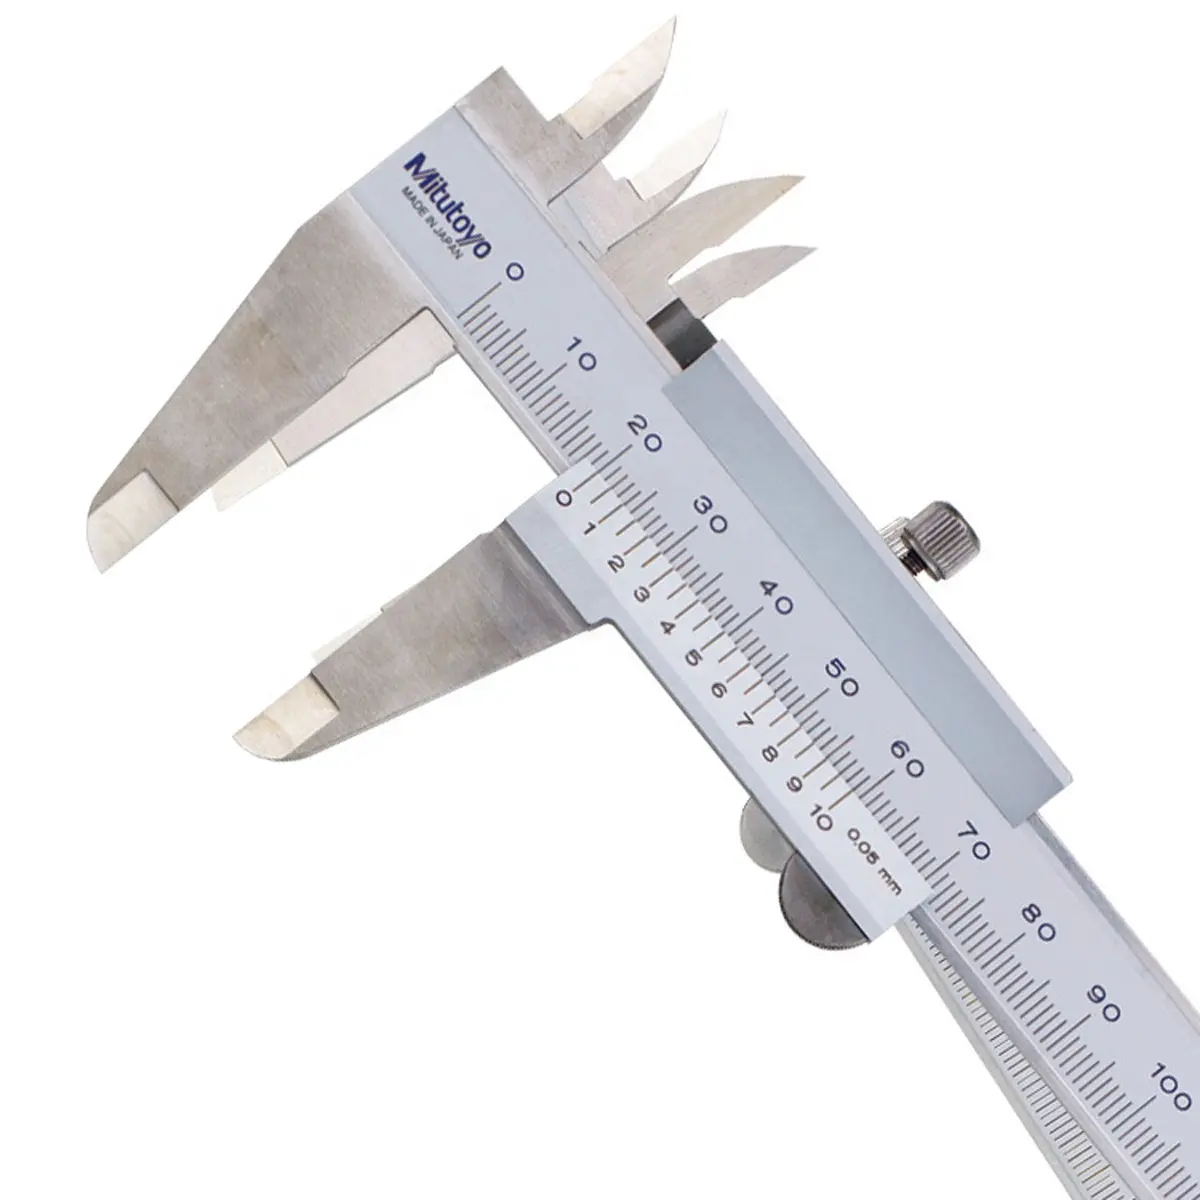 Mitutoyo Vernier kaliper 530-118/0-200mm/0.02mm sürmeli kaliperleri paslanmaz çelik iç dış derinlik adım ölçüm metrik